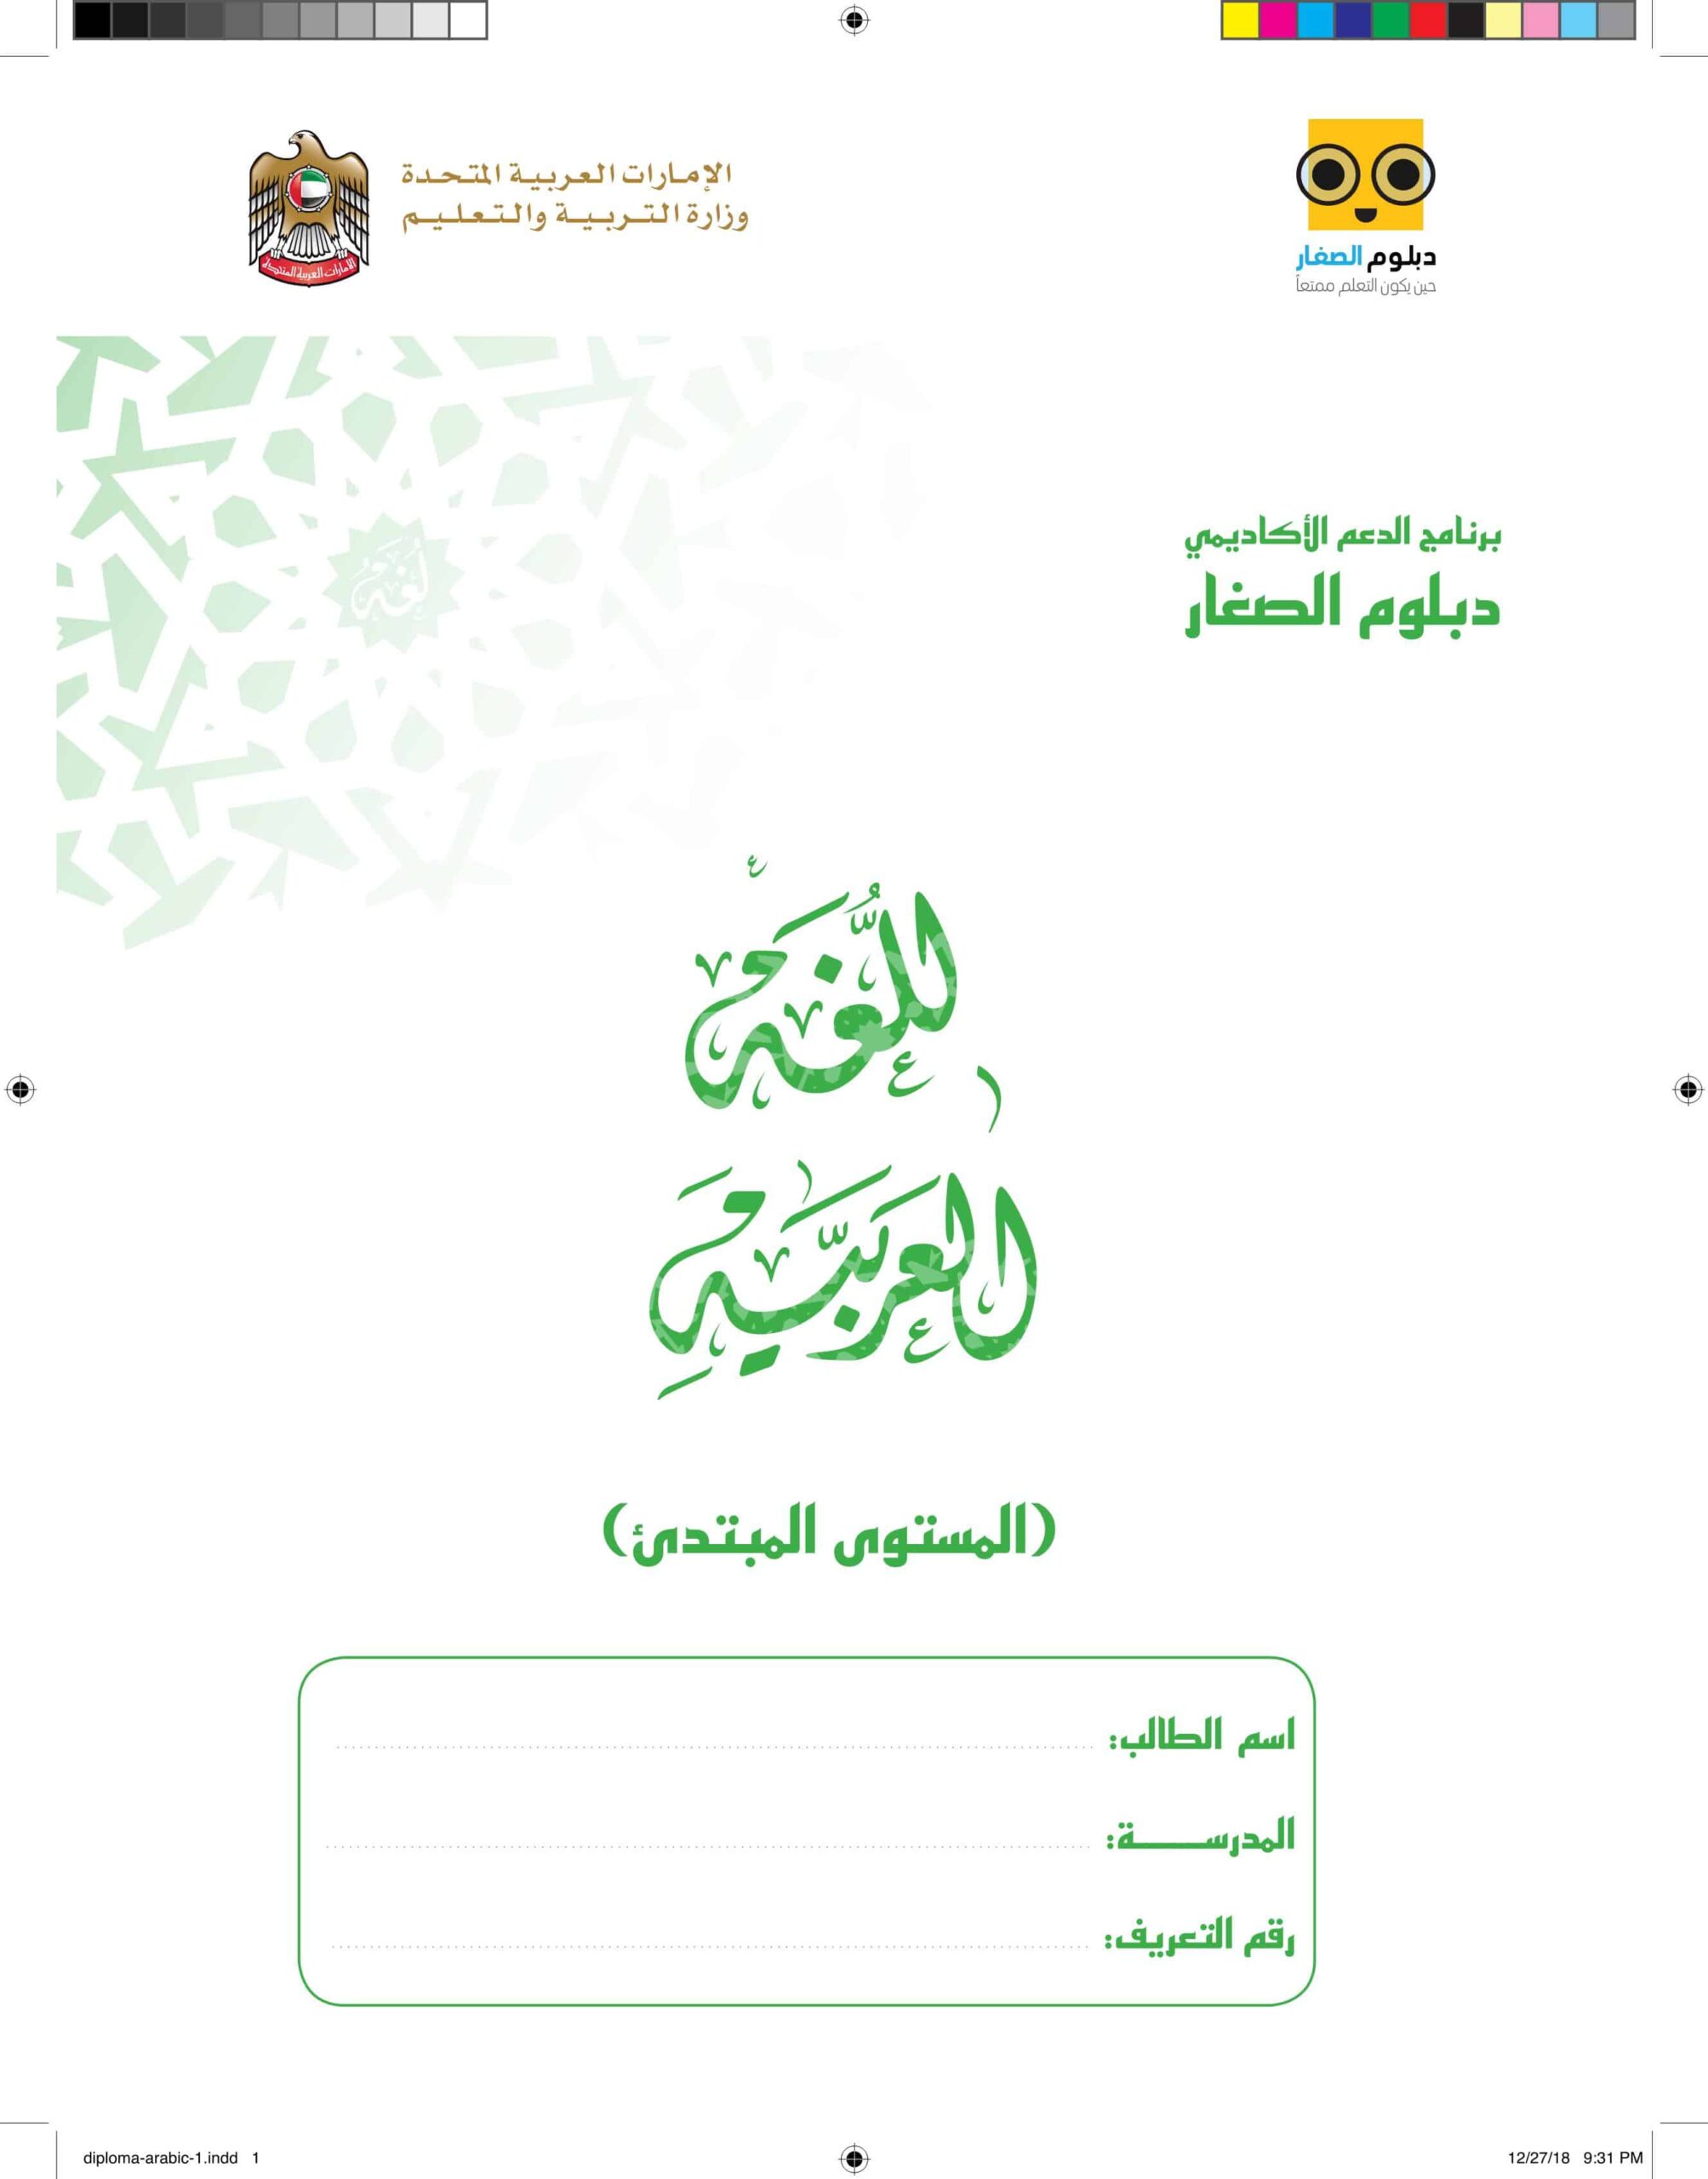 دبلوم الصغار المستوى المبتدئ اللغة العربية الصف الأول